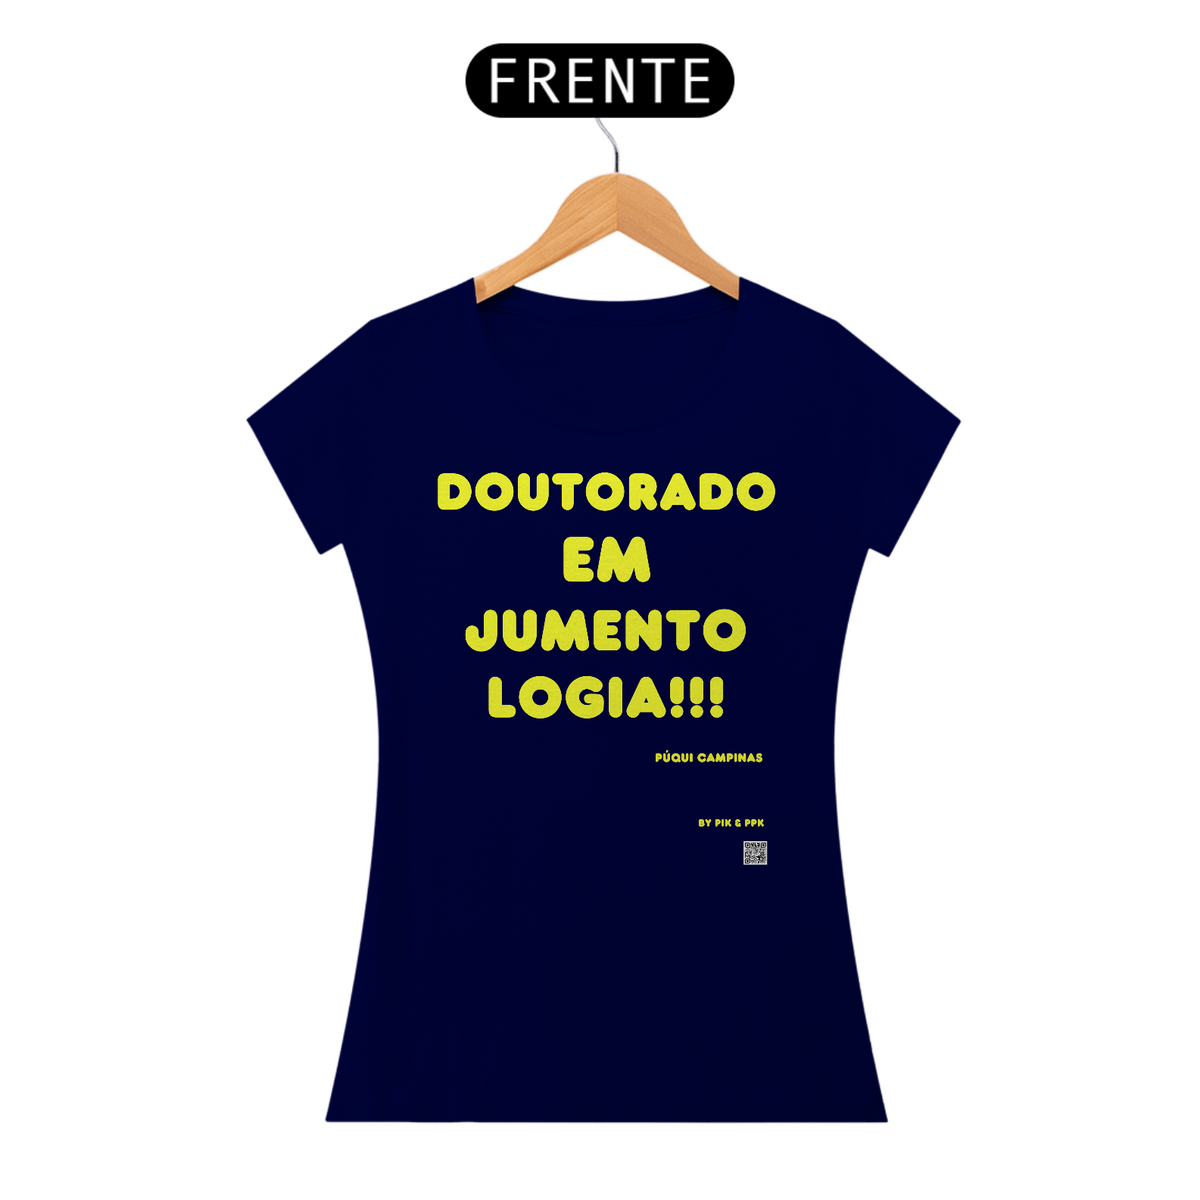 Nome do produto: camiseta Doutorado JUMENTOLOGIA Púqui